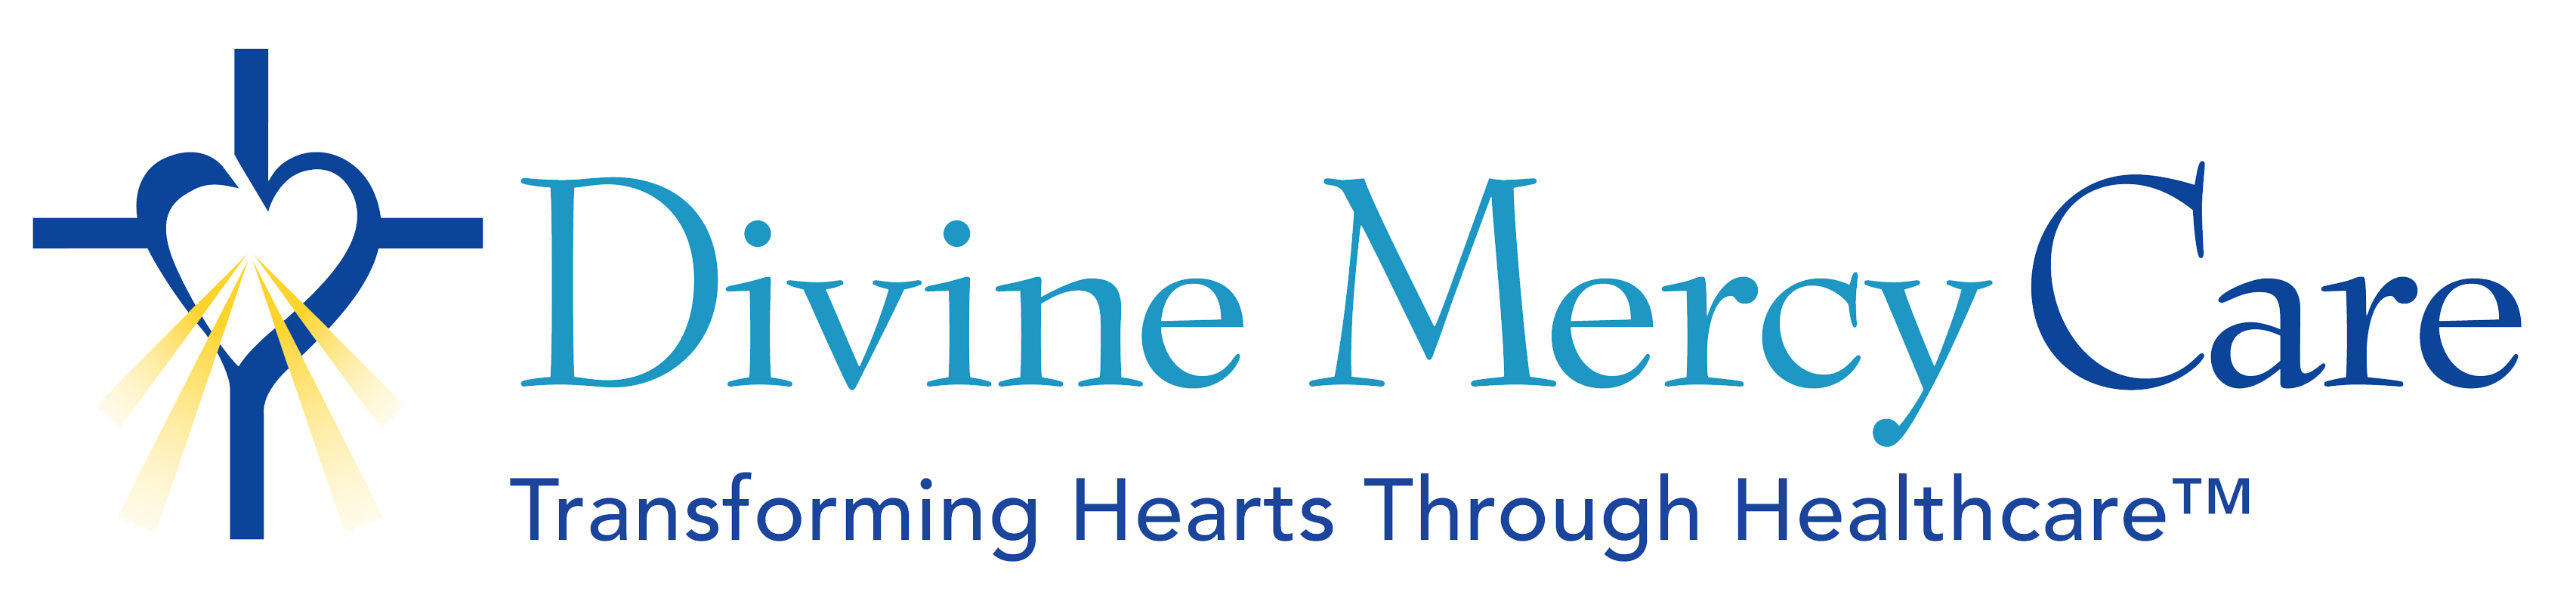 Divine Mercy Care